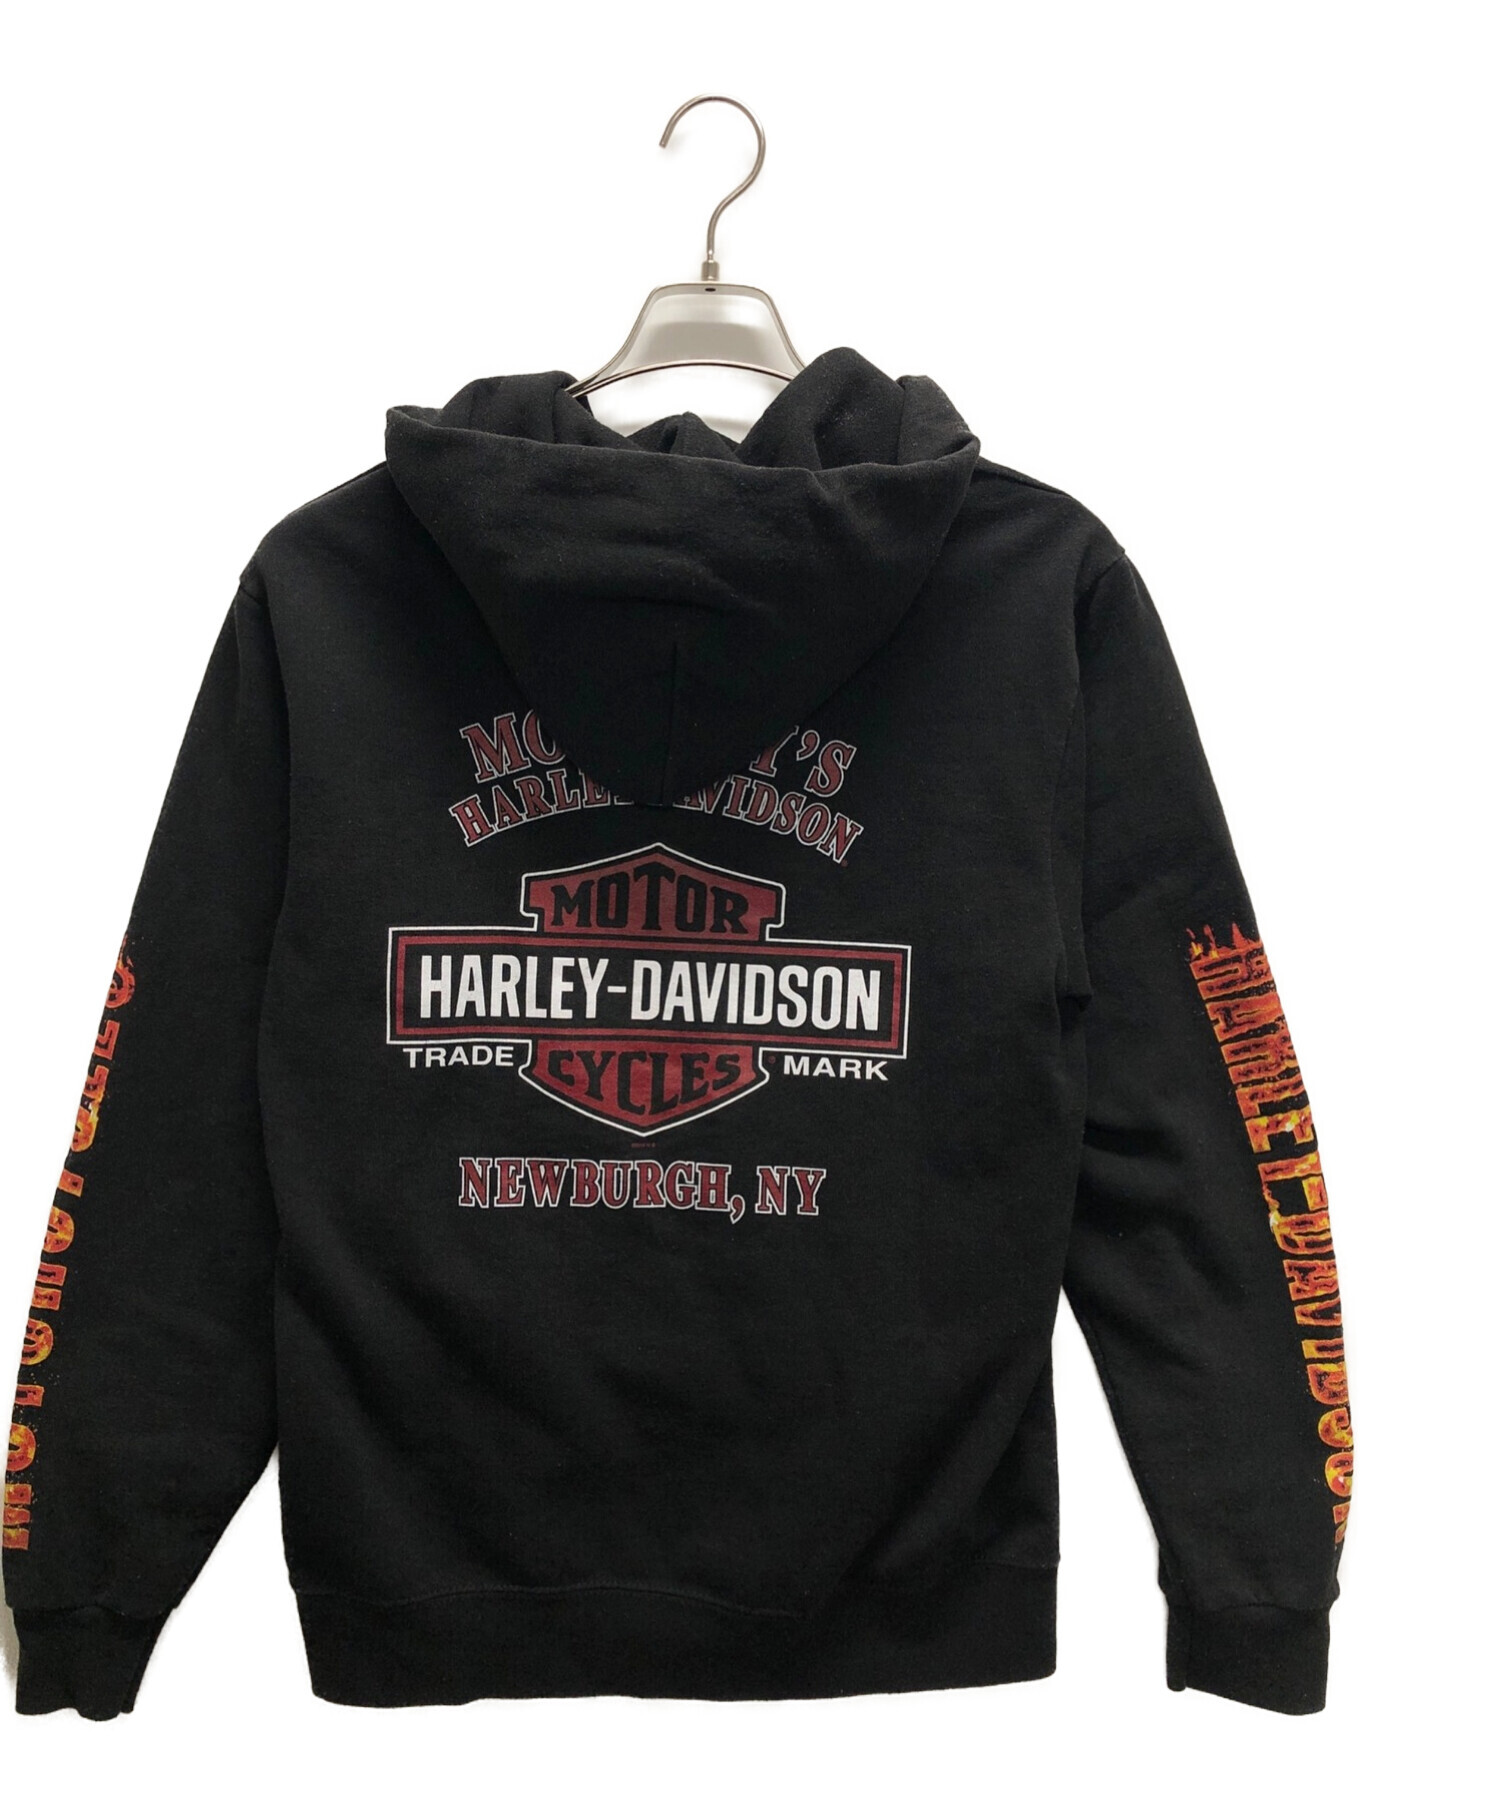 HARLEY-DAVIDSON (ハーレーダビッドソン) ジップパーカー ブラック サイズ:S